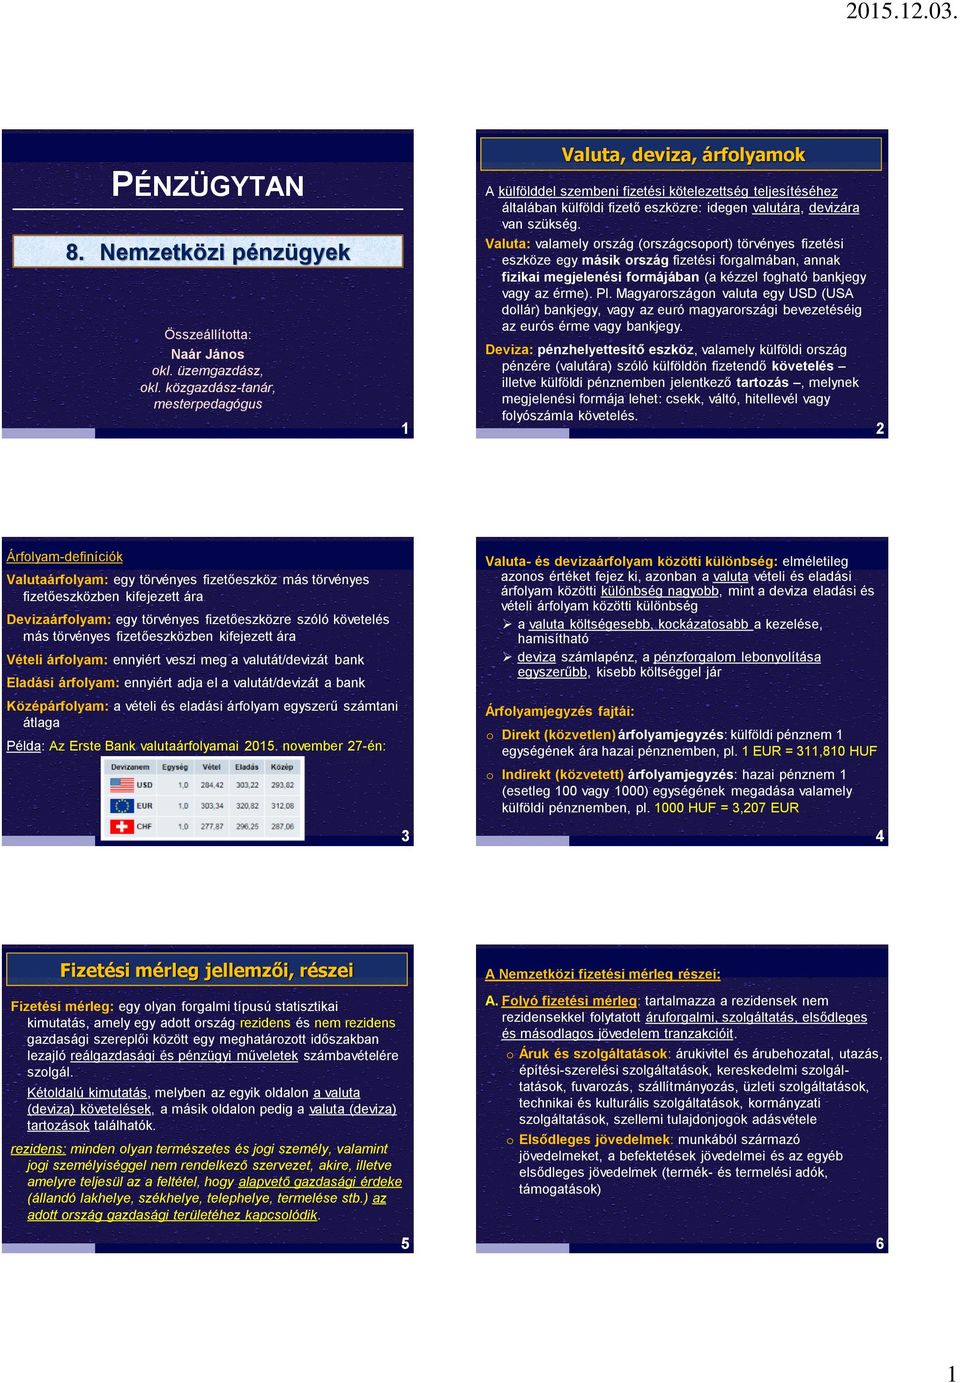 PÉNZÜGYTAN Nemzetközi pénzügyek. Valuta, deviza, árfolyamok. Fizetési  mérleg jellemzői, részei - PDF Free Download